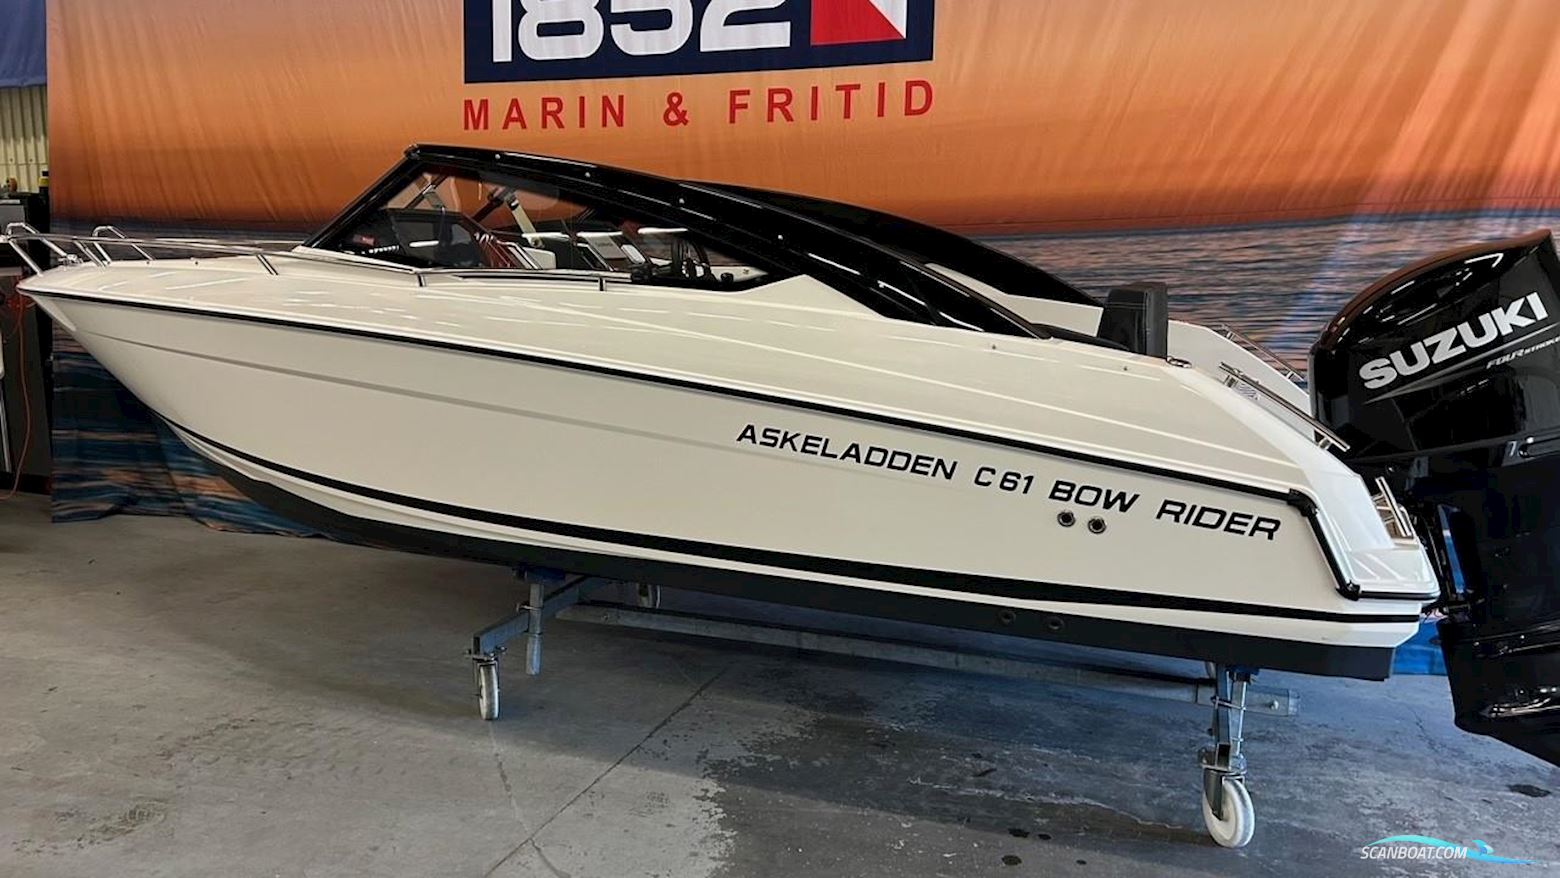 ASKELADDEN C61 Bowrider Motorbåt 2022, med Suzuki motor, Sverige